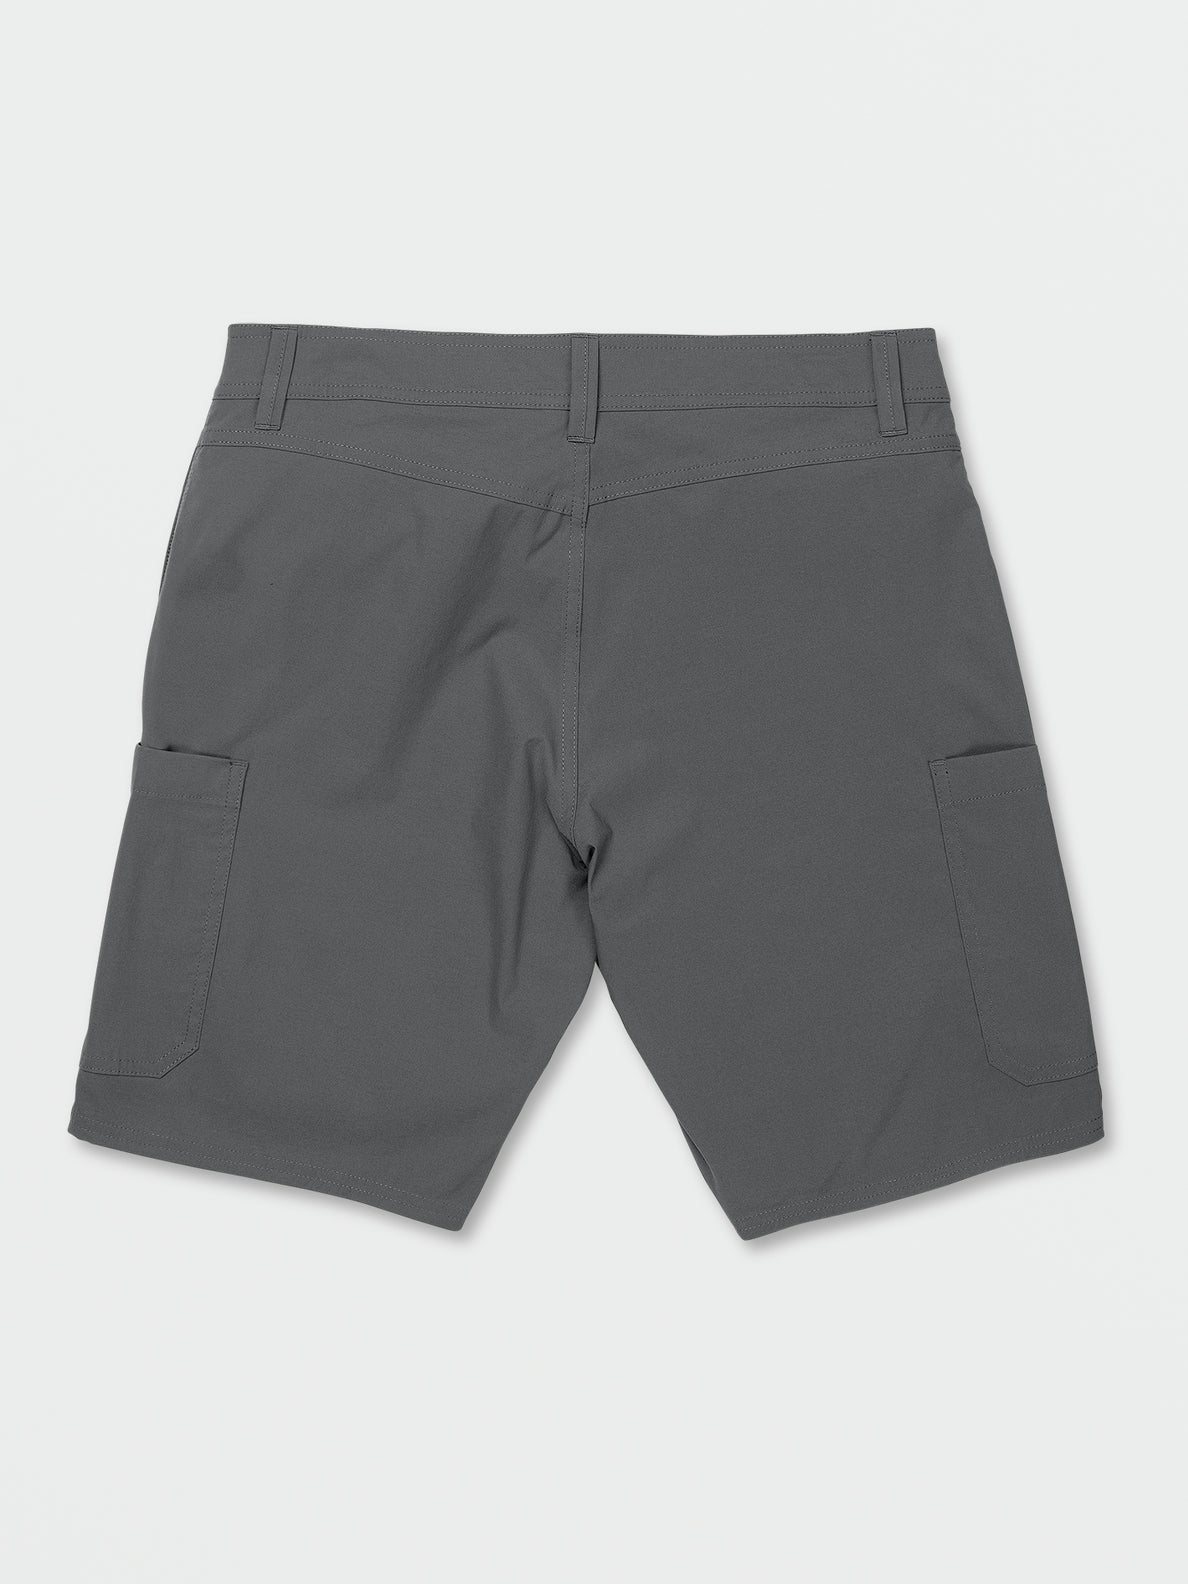 Malahine Hybrid Shorts - Asphalt Black